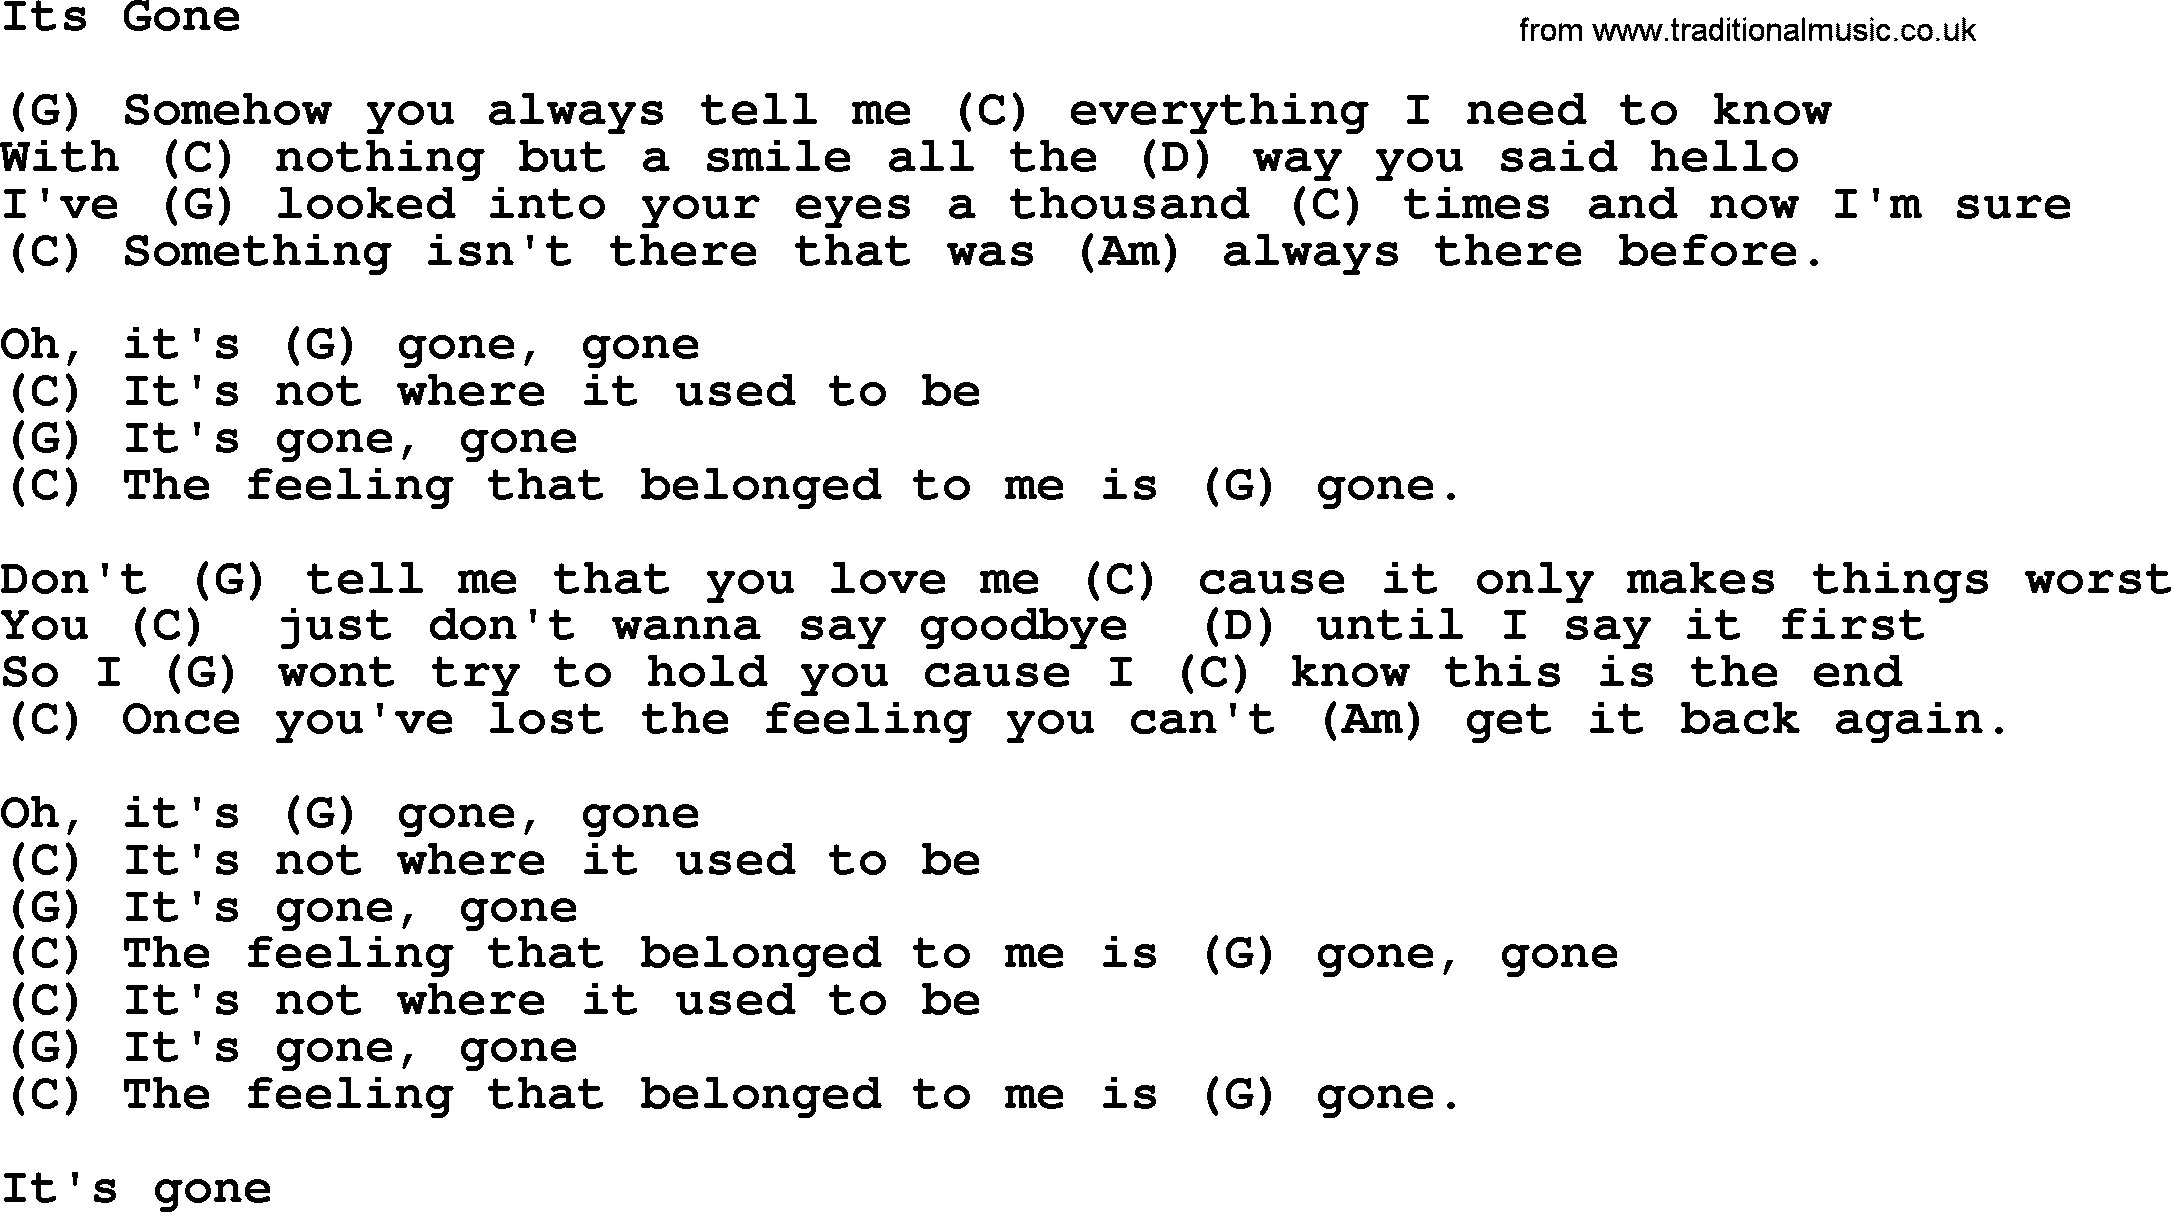 Loretta Lynn song: Its Gone lyrics and chords